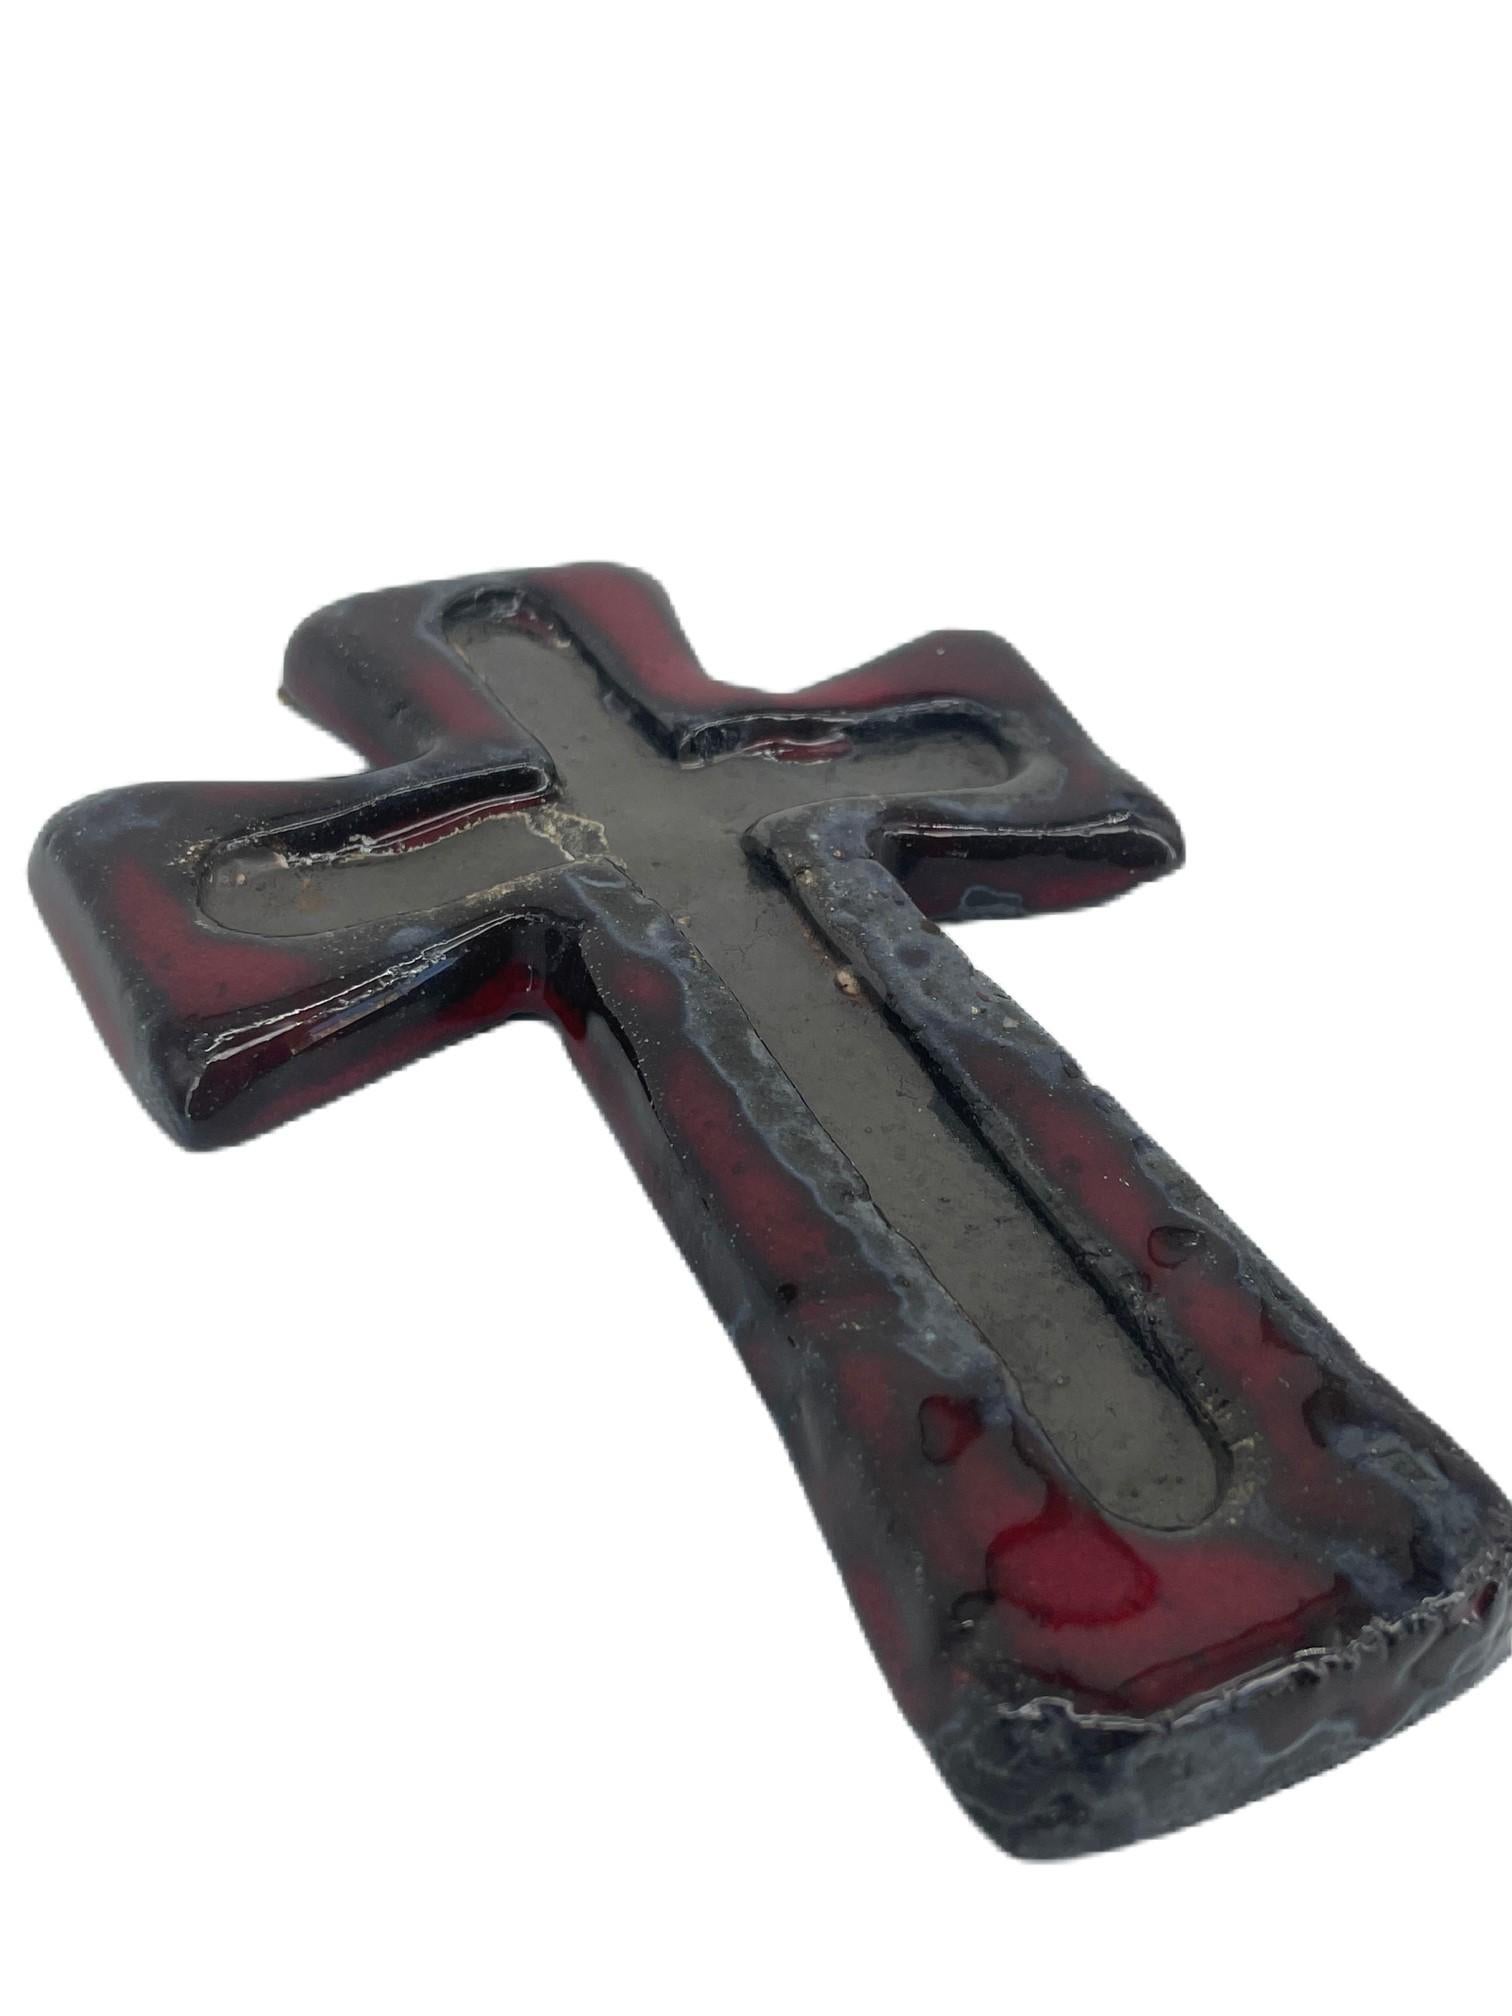 Crucifix vintage en lave de graisse rouge, noire et grise, suspension murale. Croix en céramique des années 1970. La religion. Artéfact religieux.

La poterie d'art ouest-allemande est essentiellement un terme décrivant la période 1949-1990 et est